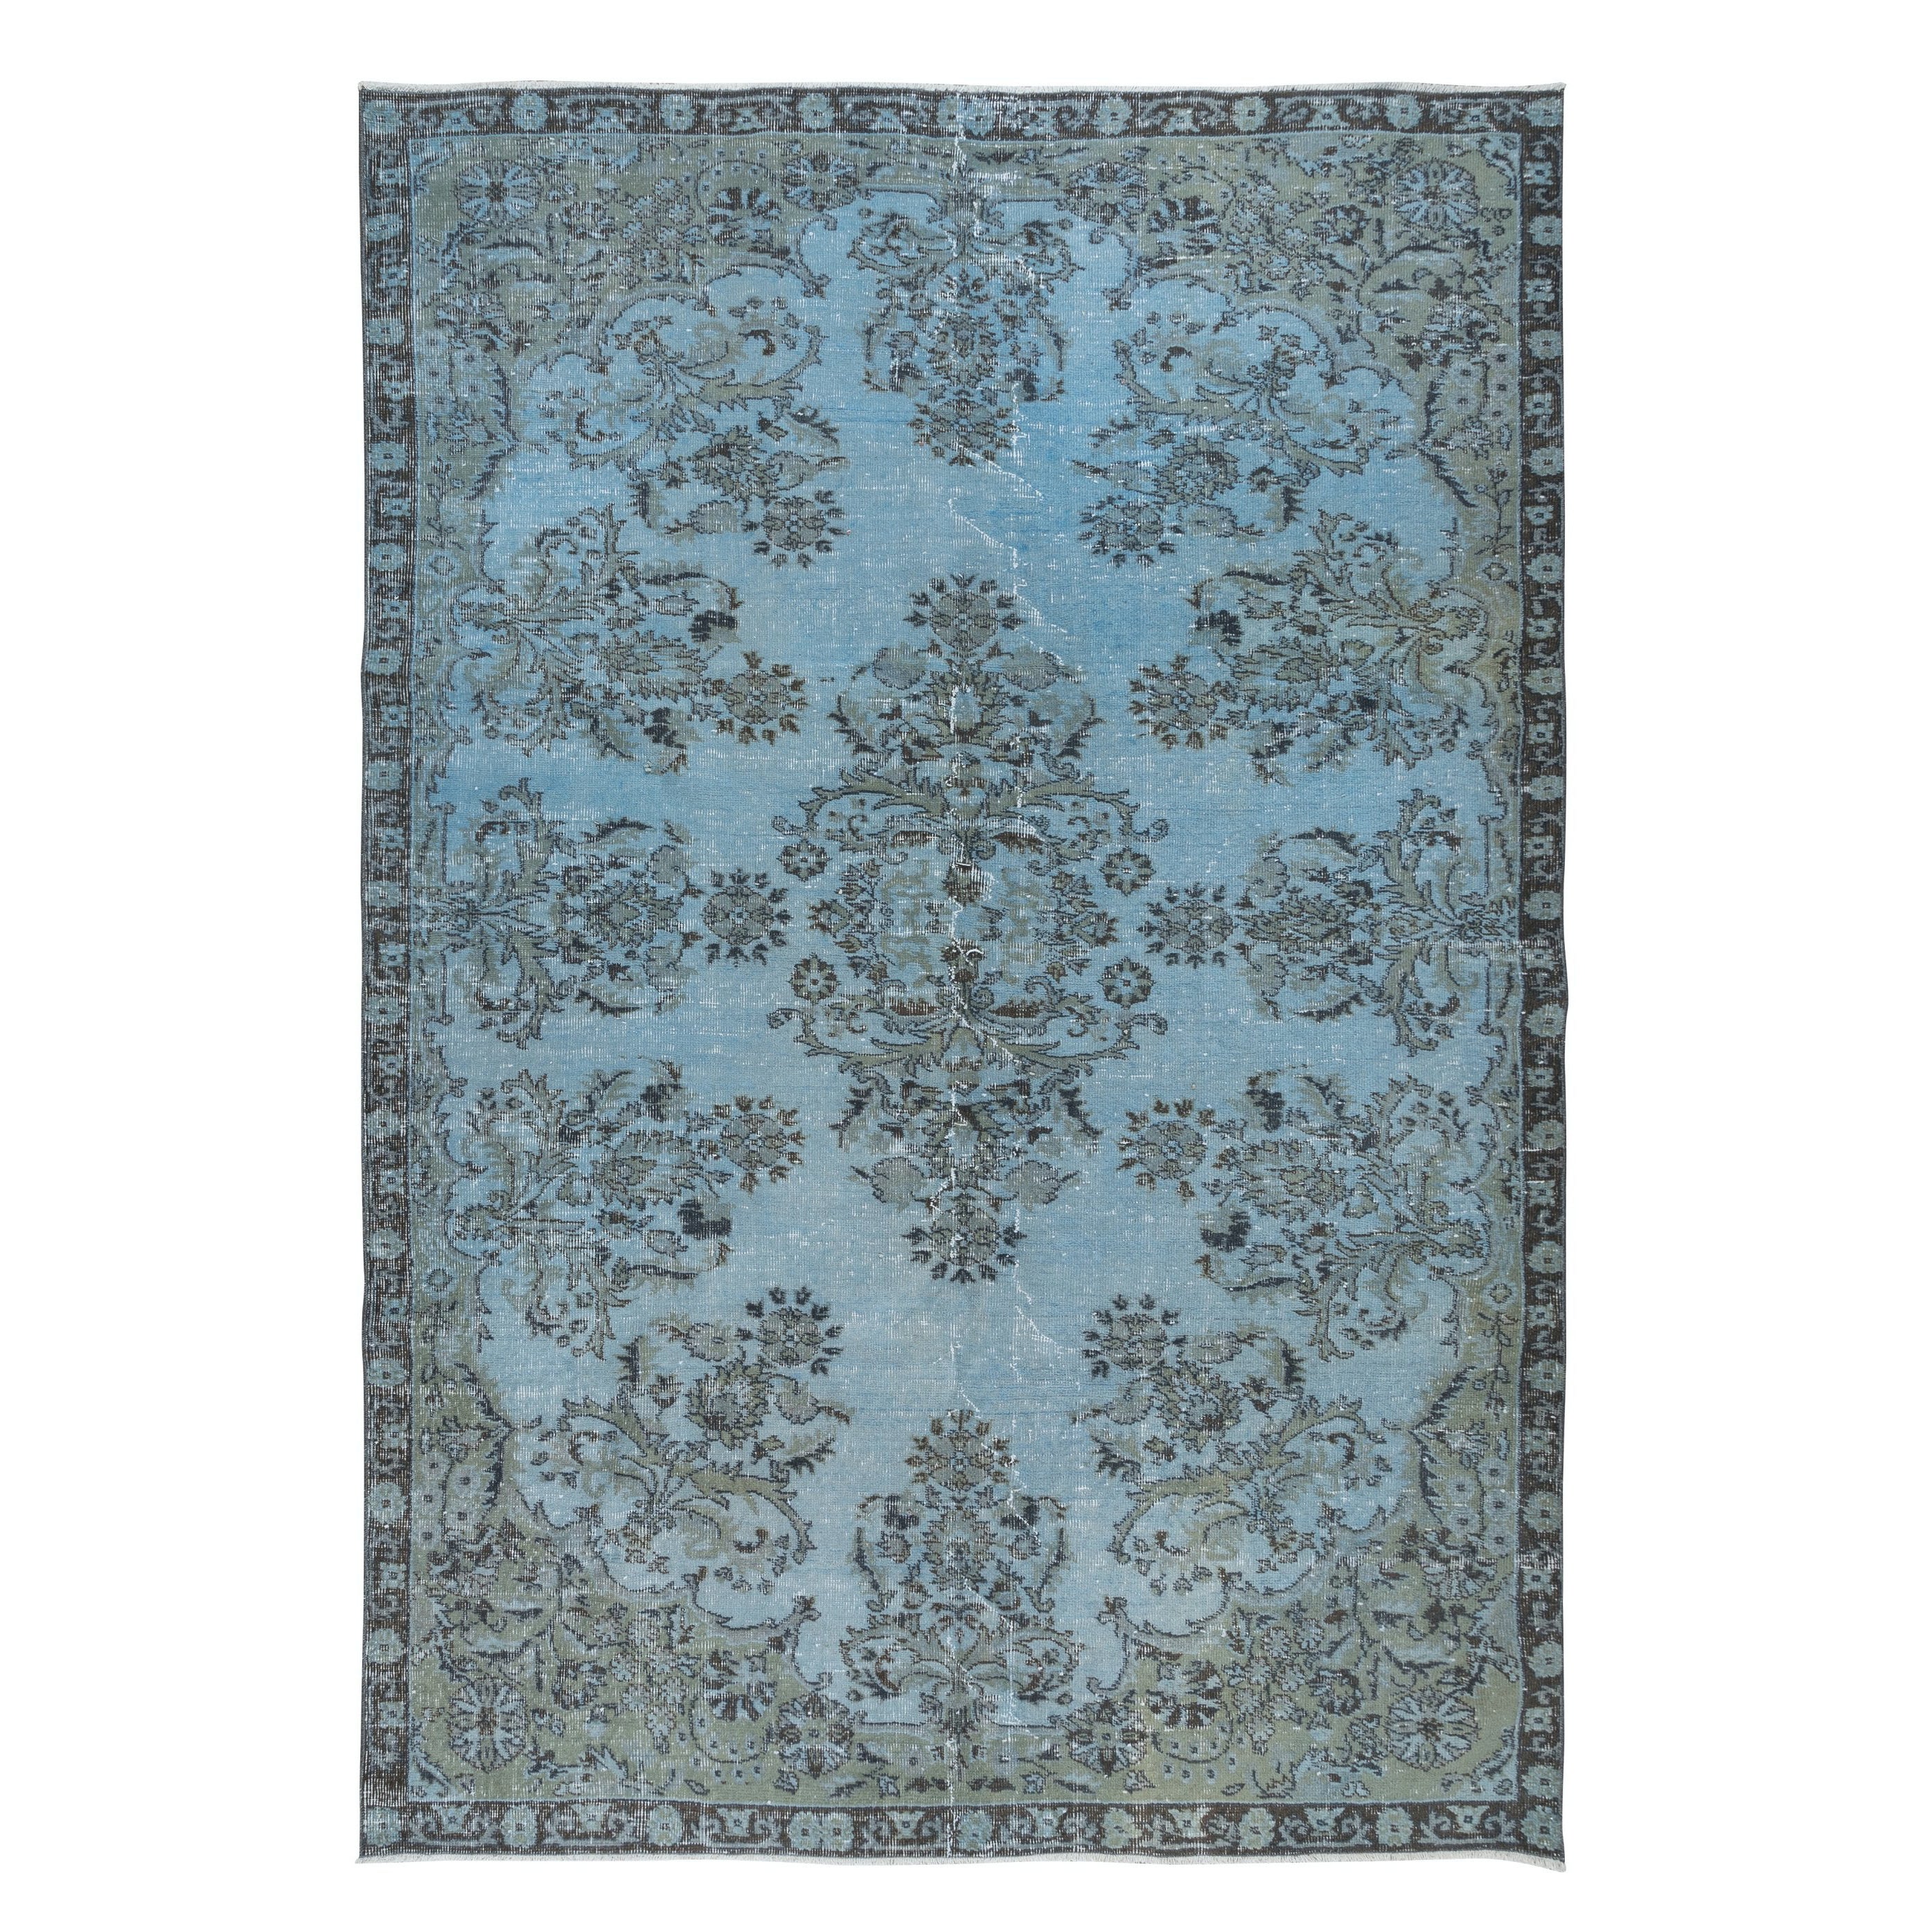 6.4x9.4 Ft Turkish Handmade Floral Rug in Light Blue, Modern Sky Blue Carpet (tapis moderne bleu ciel)